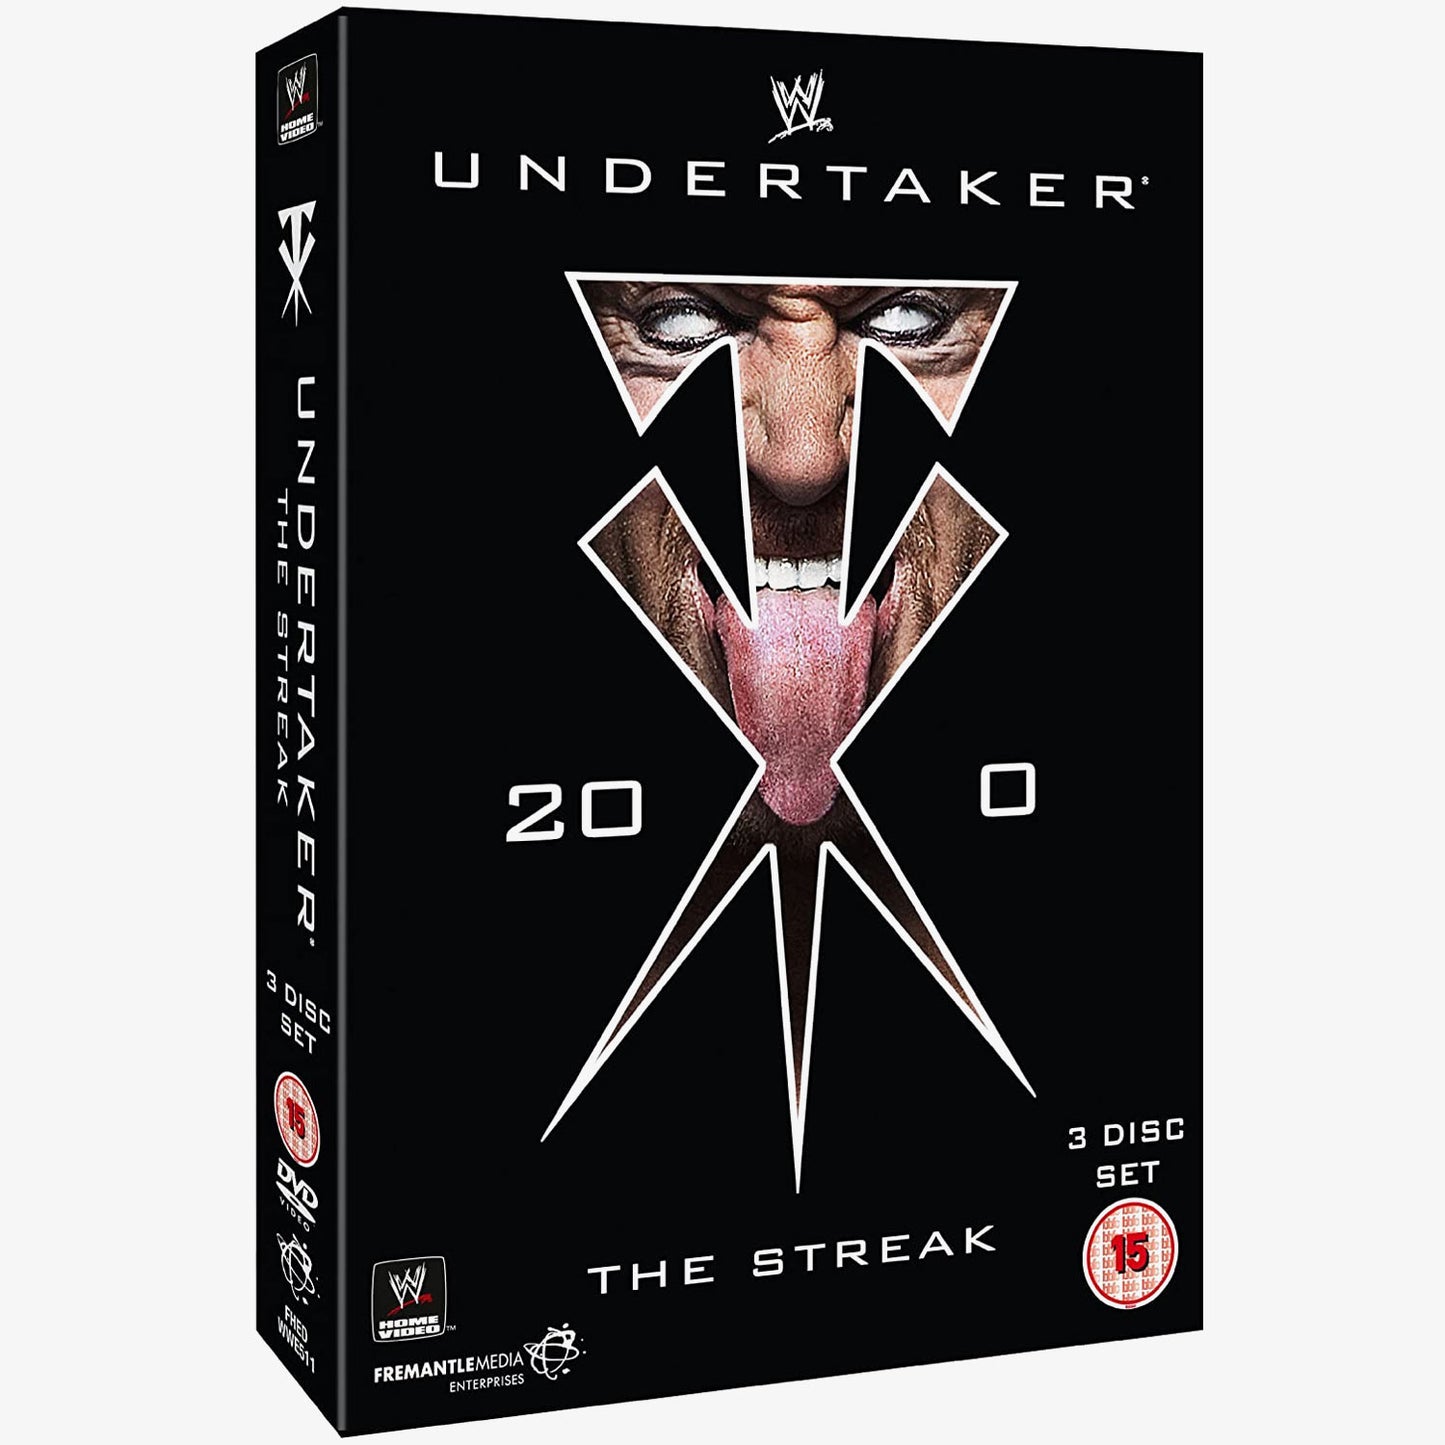 WWE Undertaker - The Streak DVD